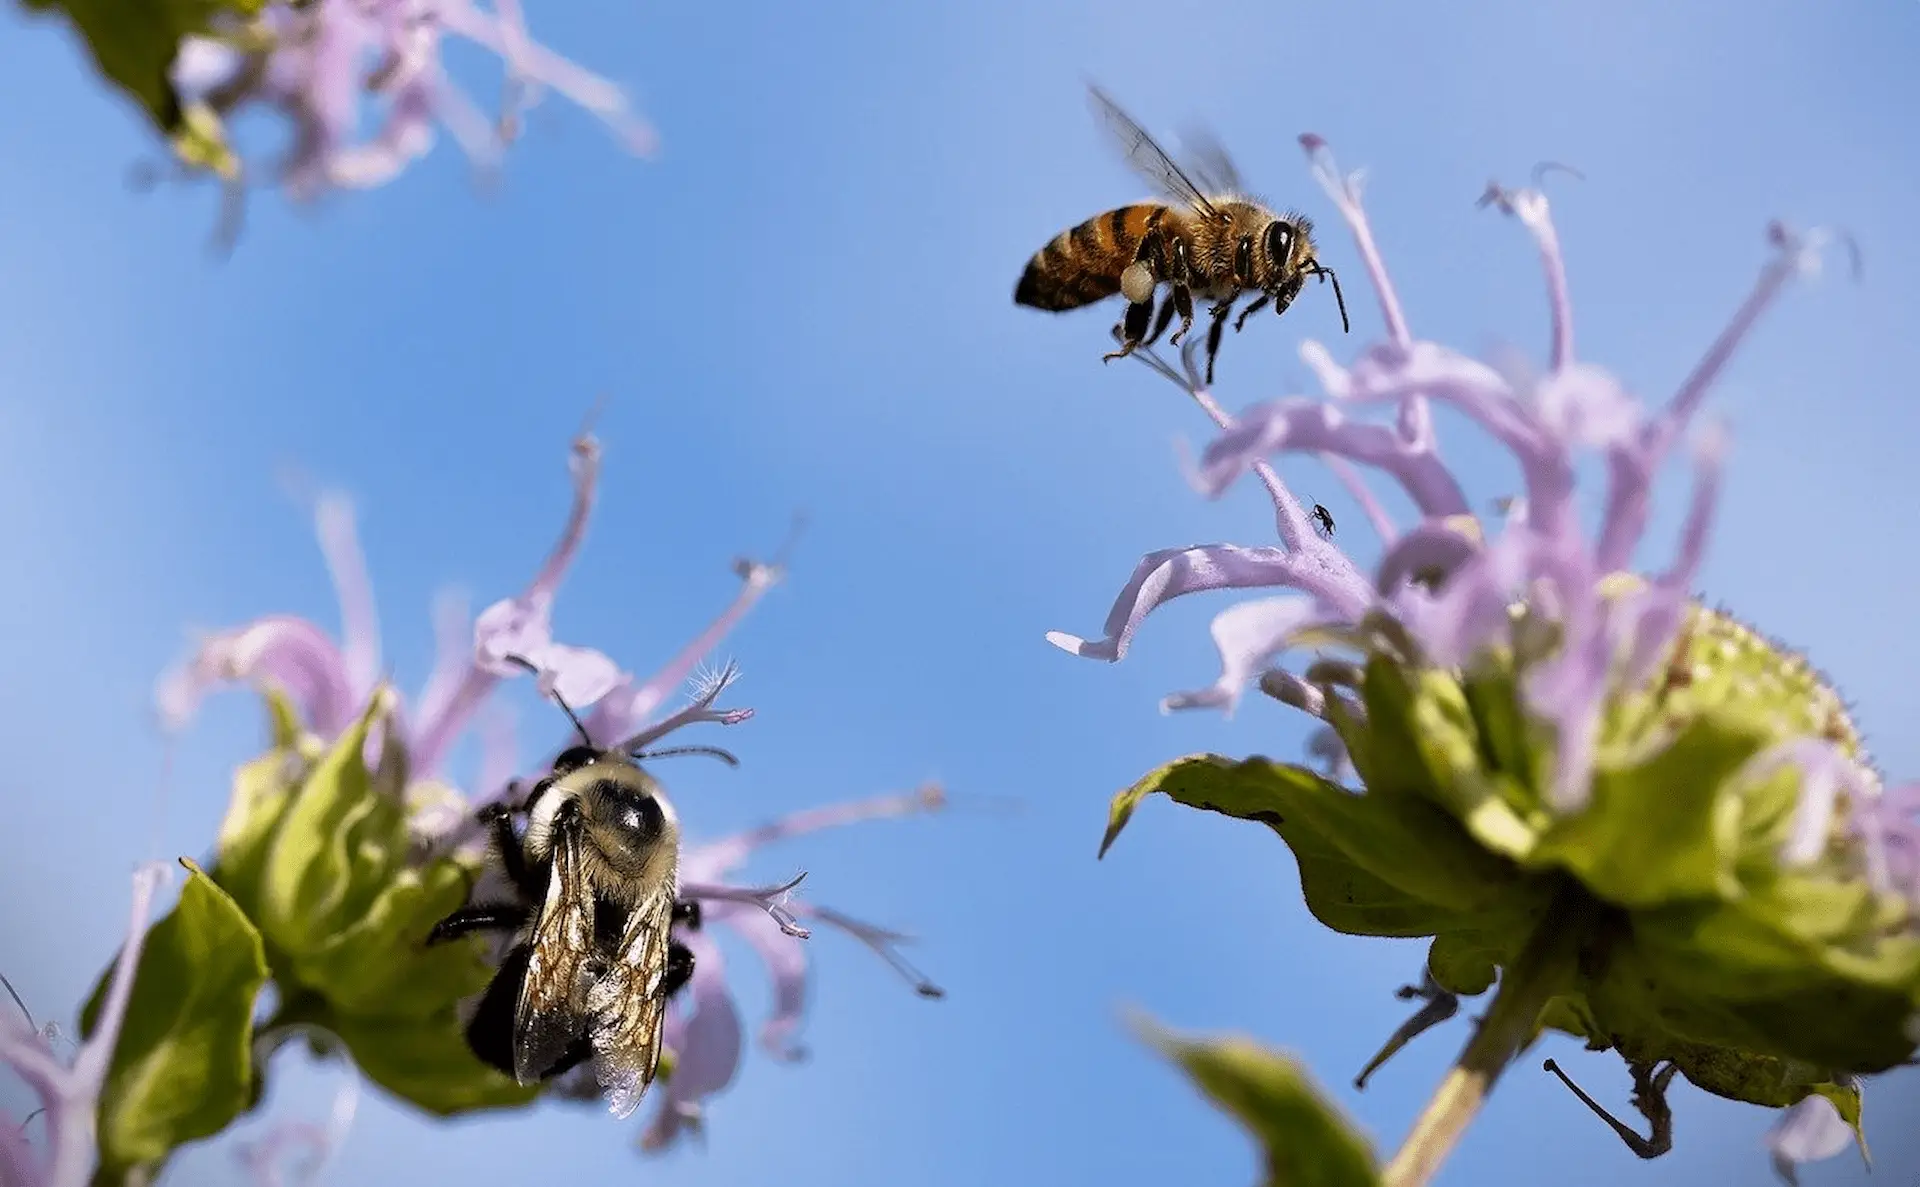 El aceite rico en omega 3 puede prevenir los daños causados por los pesticidas neonicotinoides en abejas melíferas / Foto: PB